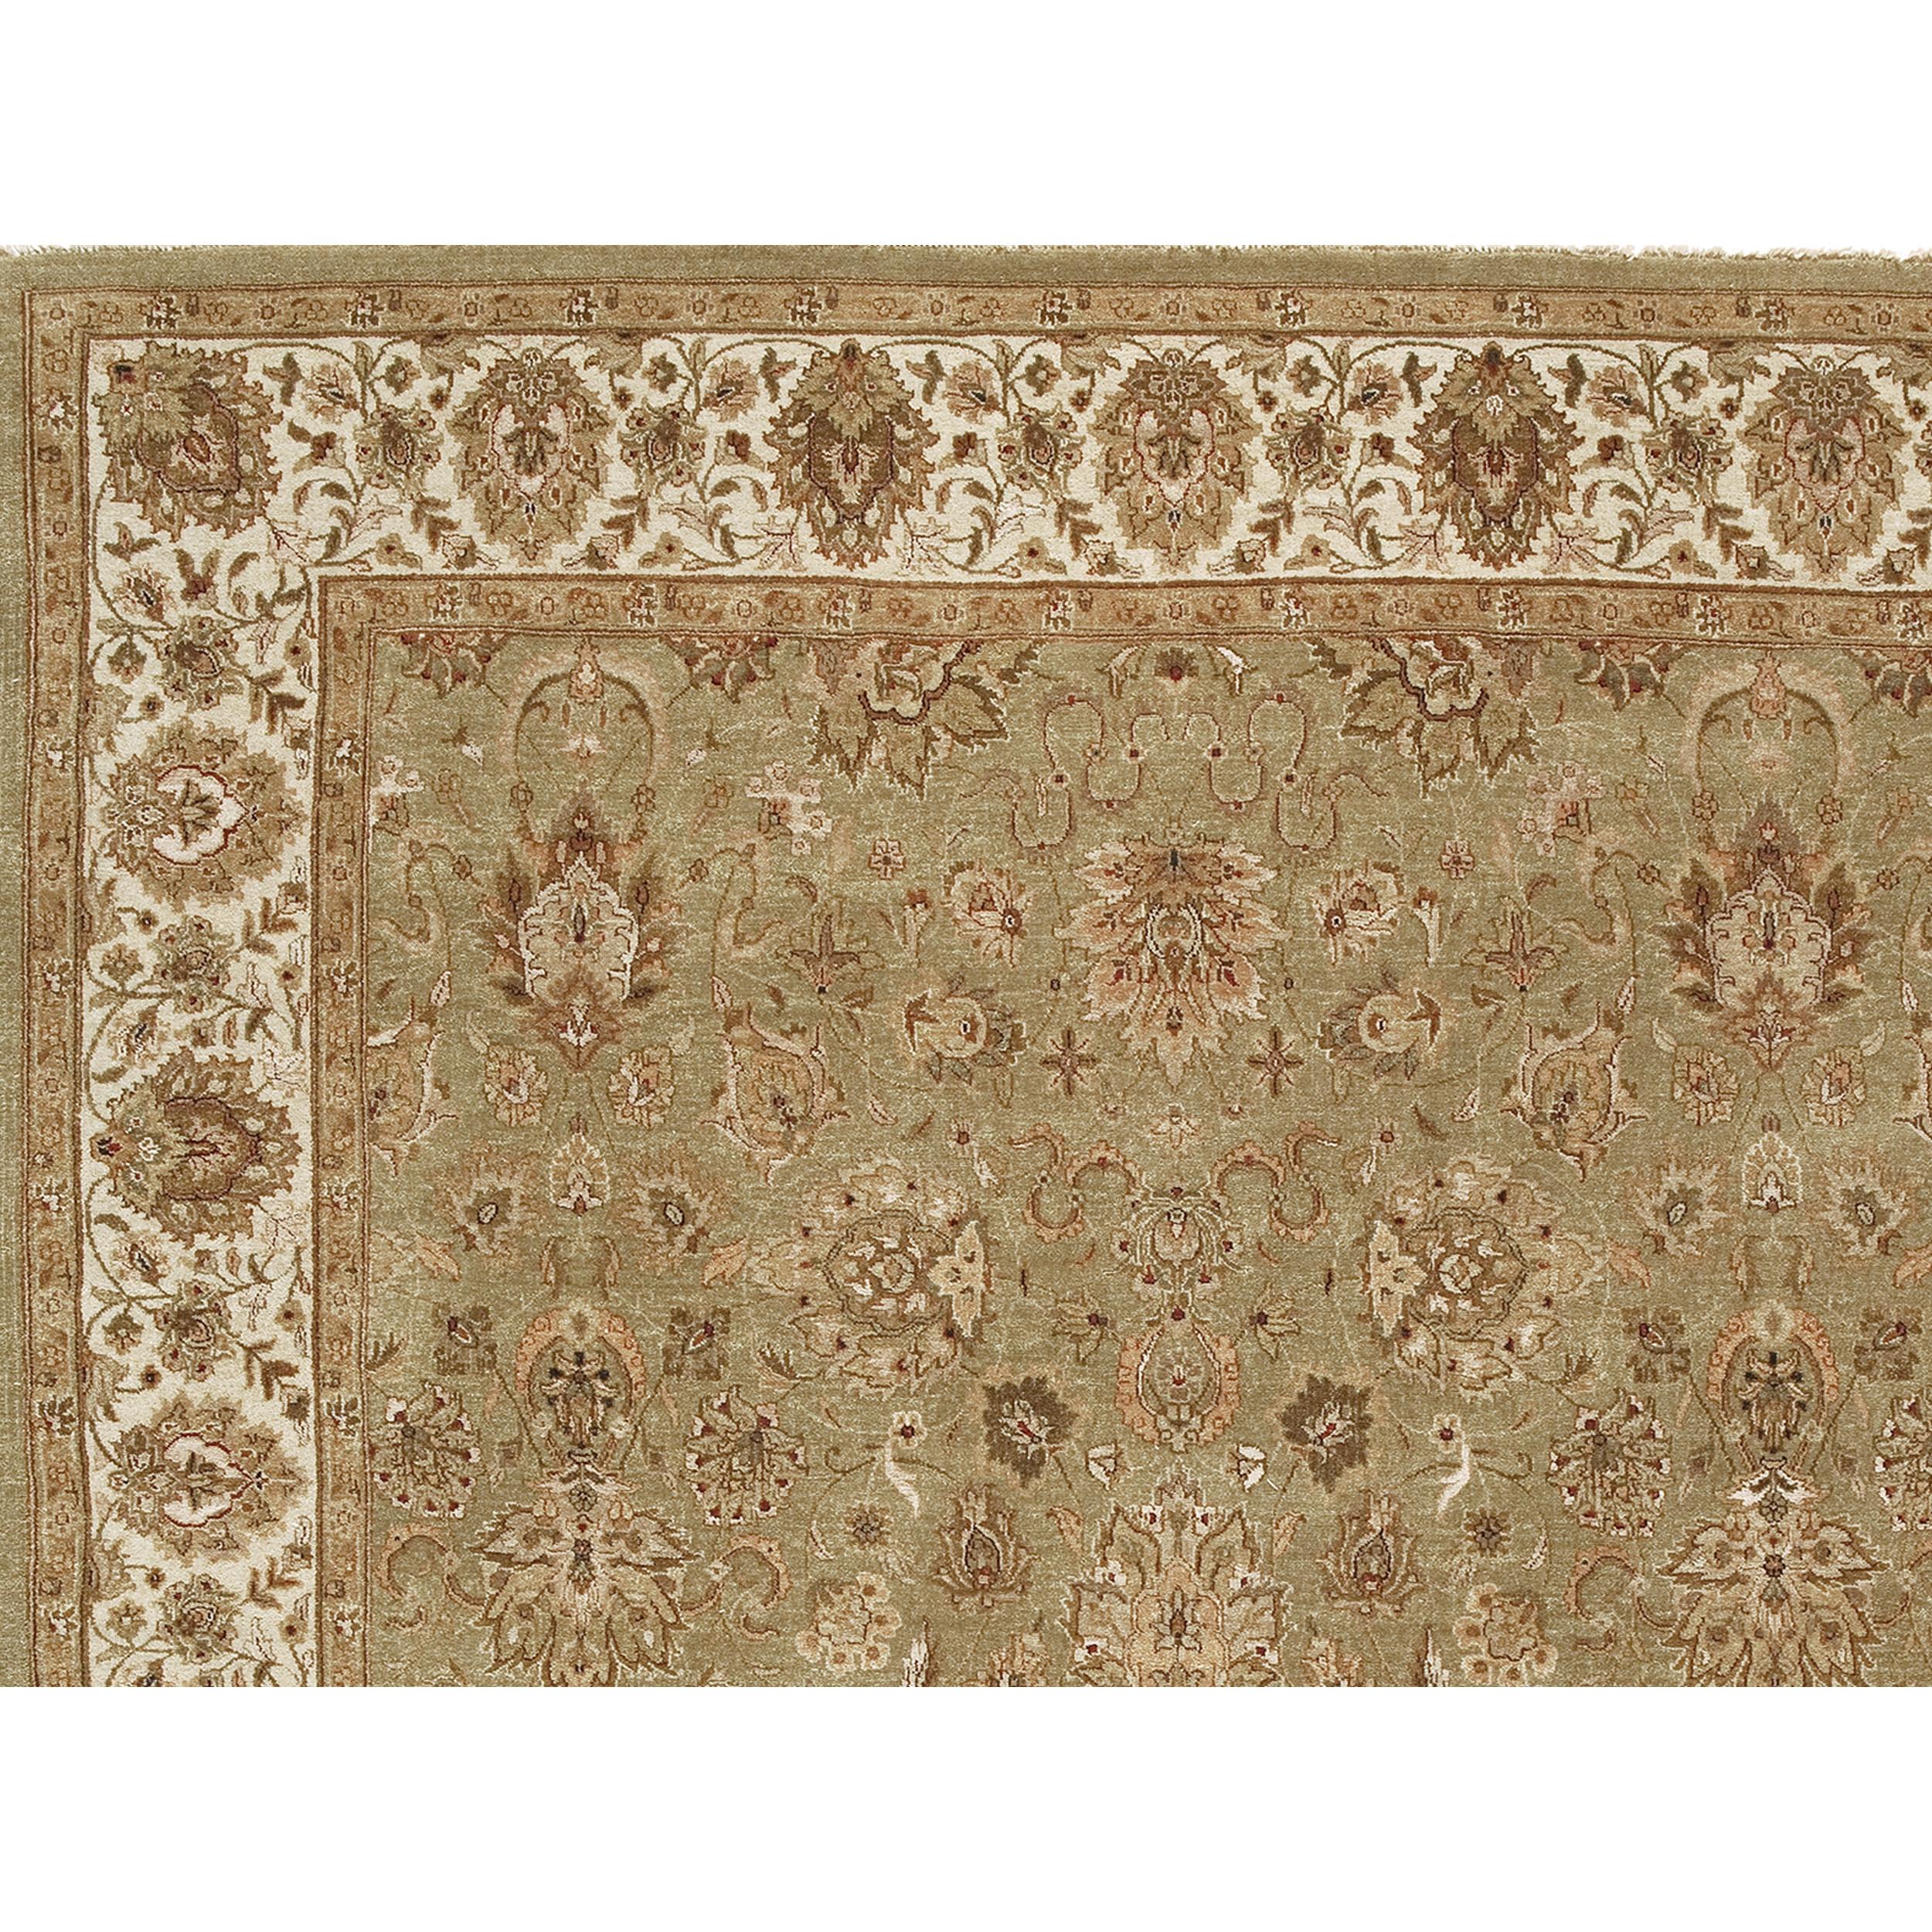 Jeder Zentimeter dieses Teppichs wird von geschickten Kunsthandwerkern in Indien sorgfältig von Hand geknüpft. Das Design spiegelt eine traditionelle, zeitlose Ästhetik wider. Hergestellt aus einer harmonischen Mischung aus Seide und kostbarer